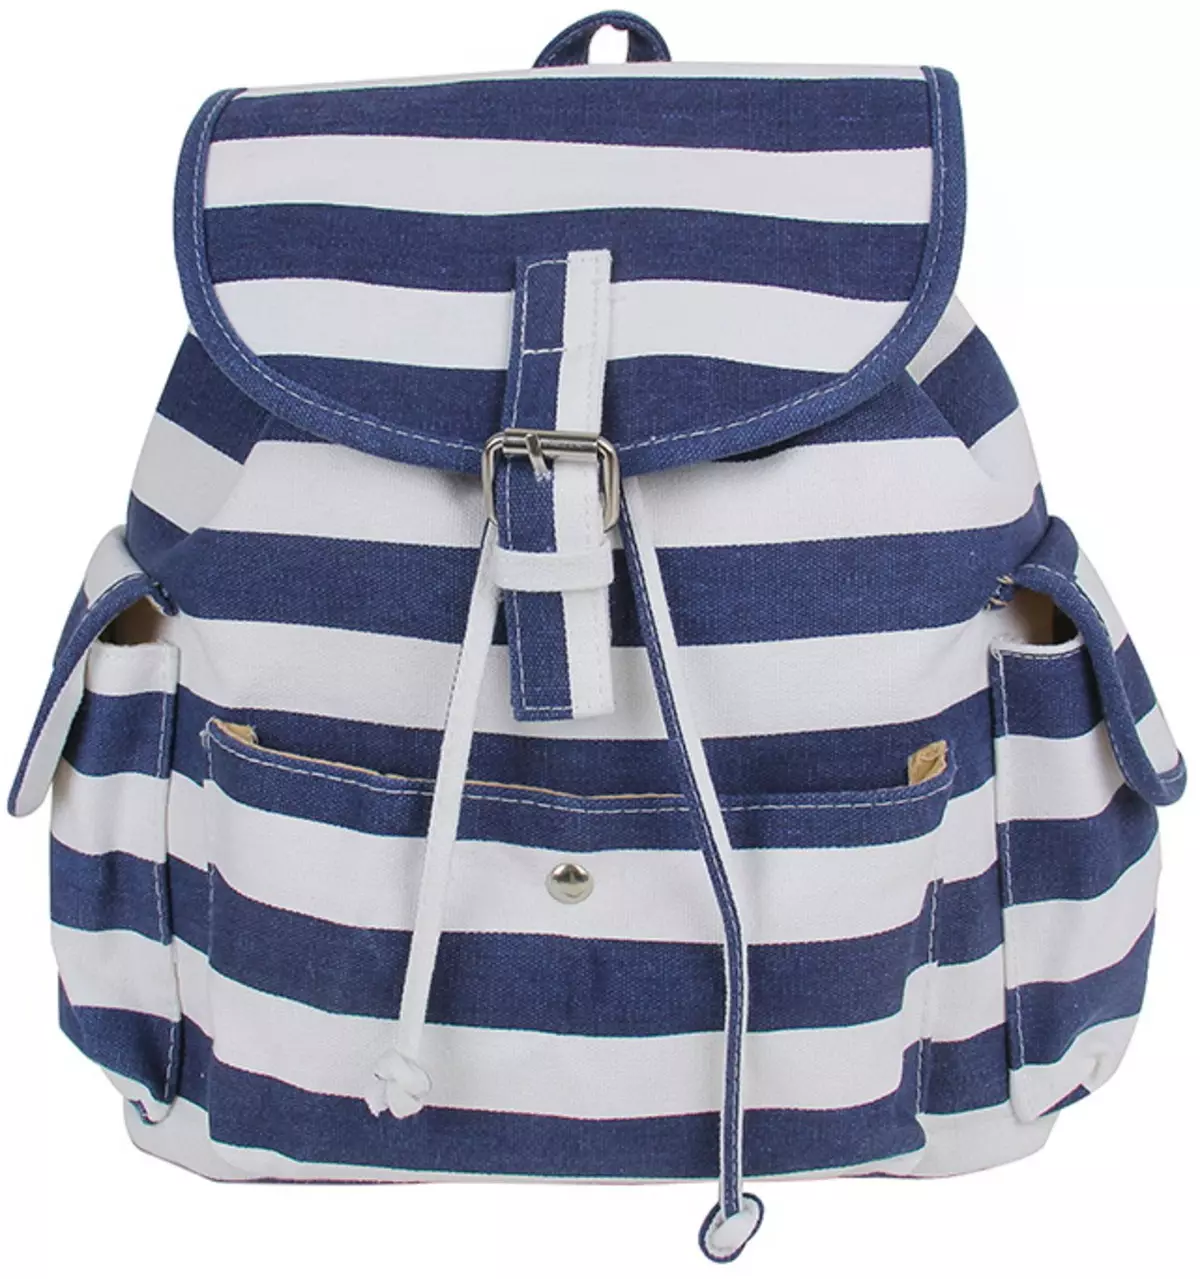 Kari backpacks: მიმოხილვა ქალთა მოდელები, სკოლა ზურგჩანთების გოგონების და ბიჭები, თეთრი და შავი ზურგჩანთები სხვა ბრენდების წარმოდგენილი მაღაზიაში 15431_27